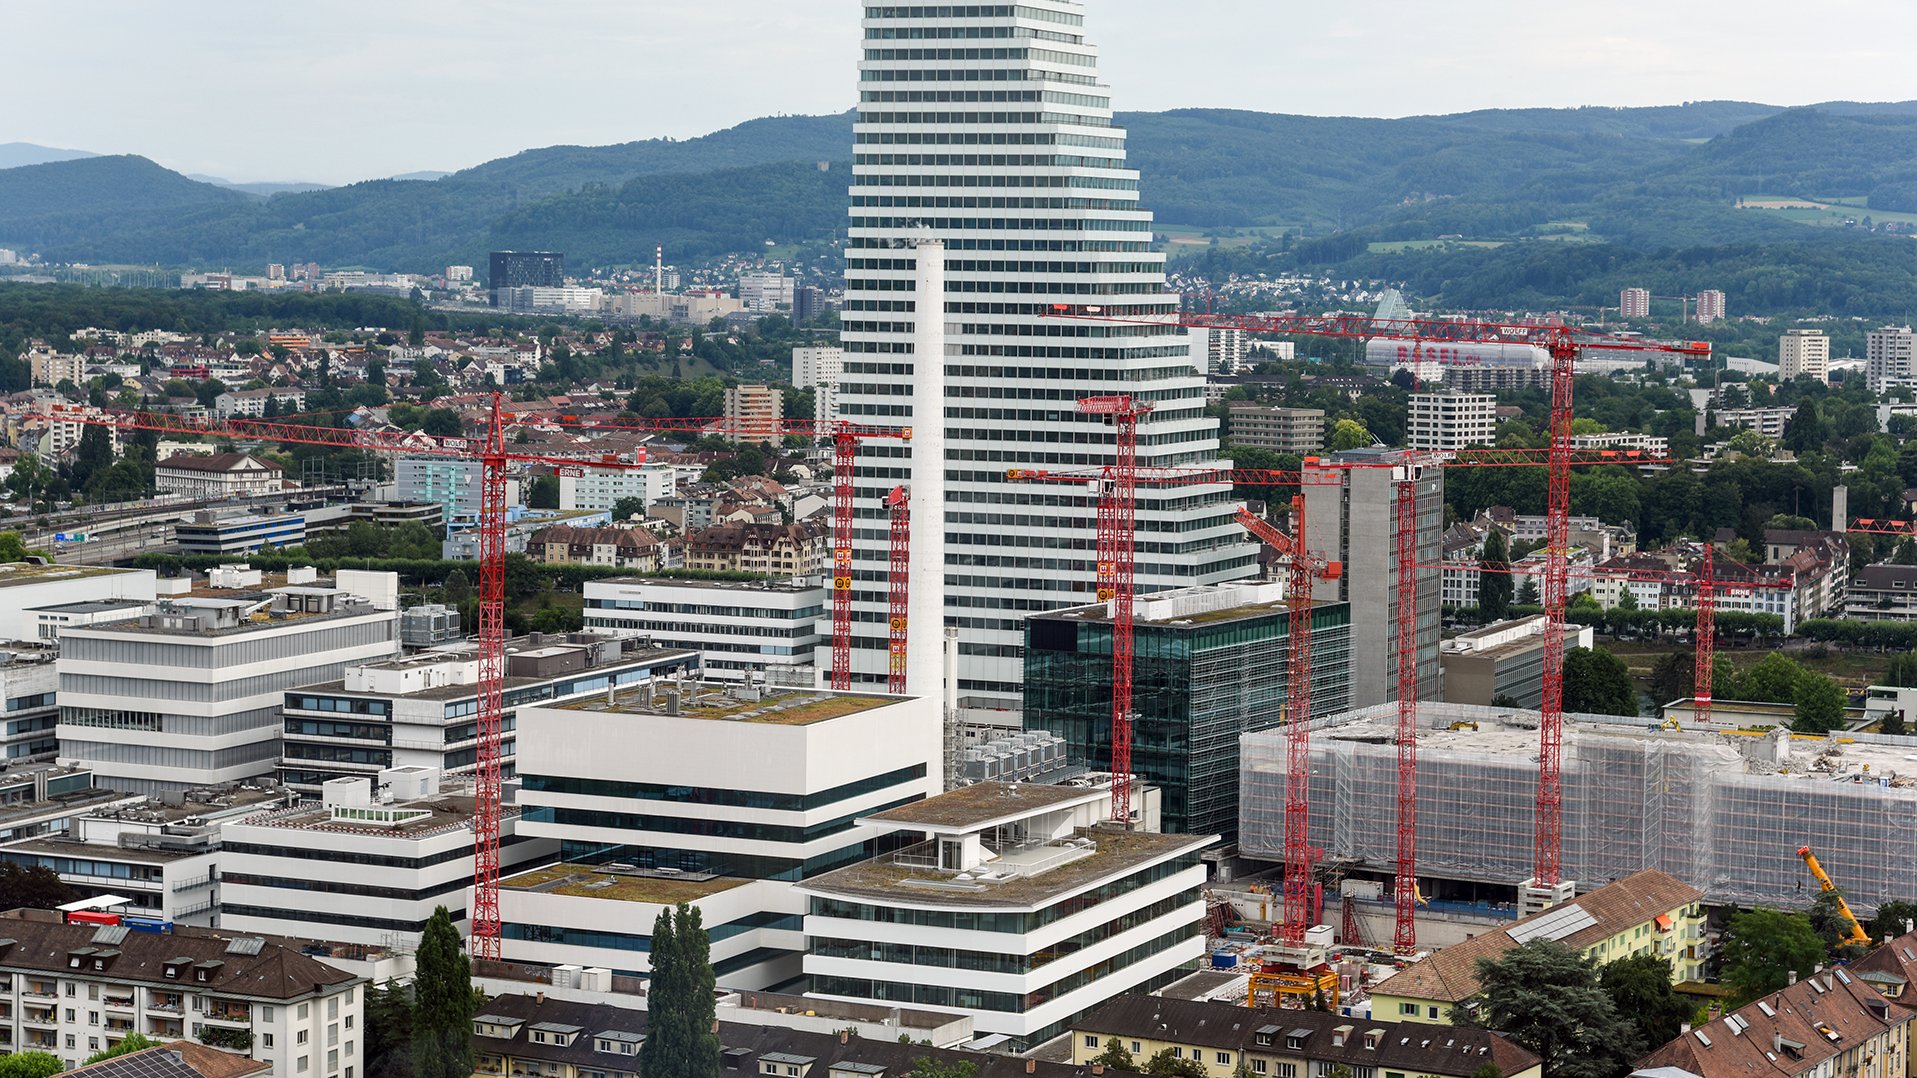 La Roche in Basel, Switzerland